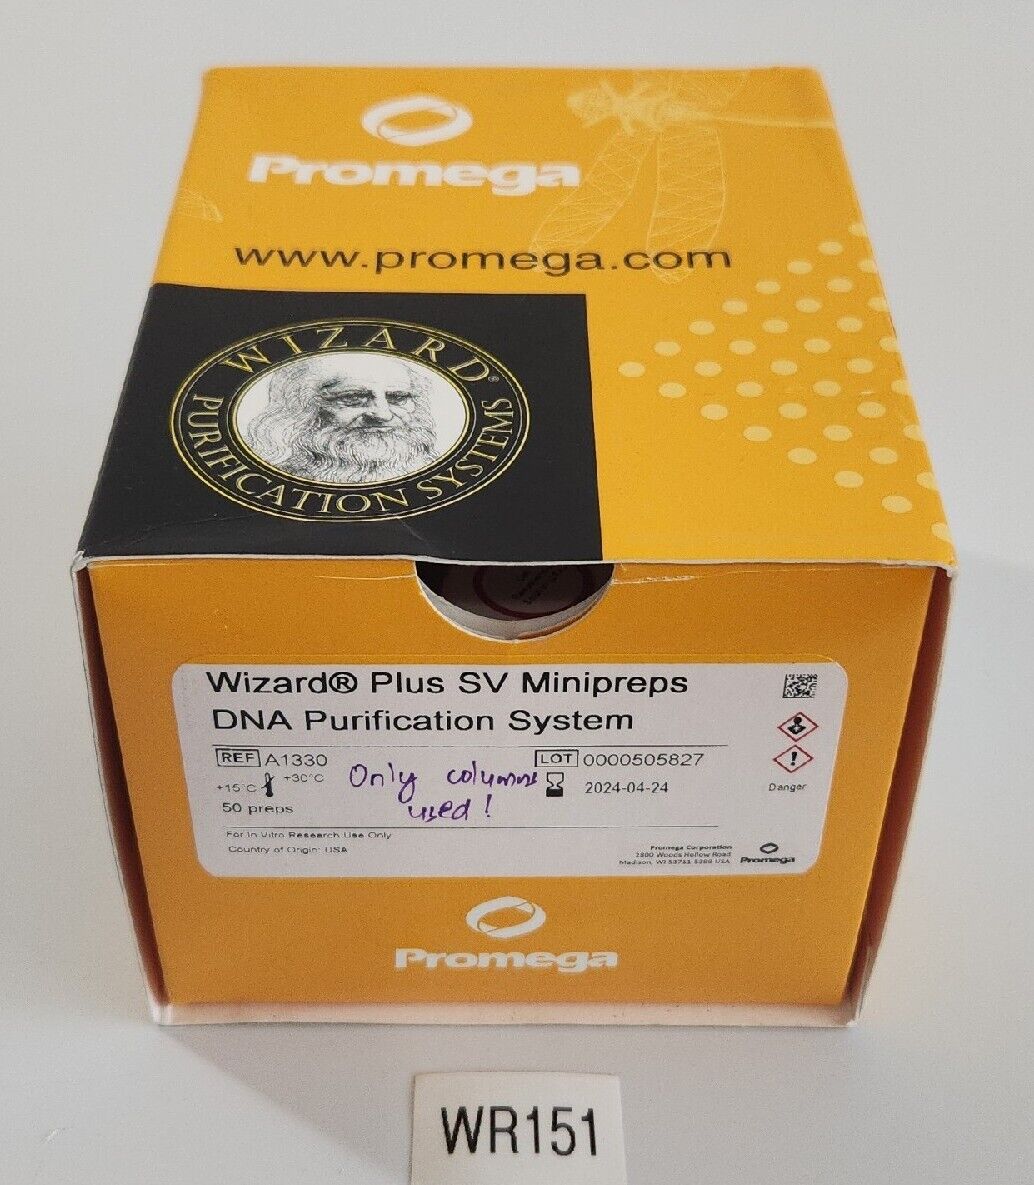 *NEW* Promega A1330 Wizard Plus SV Minipreps DNA Purification System + Warranty